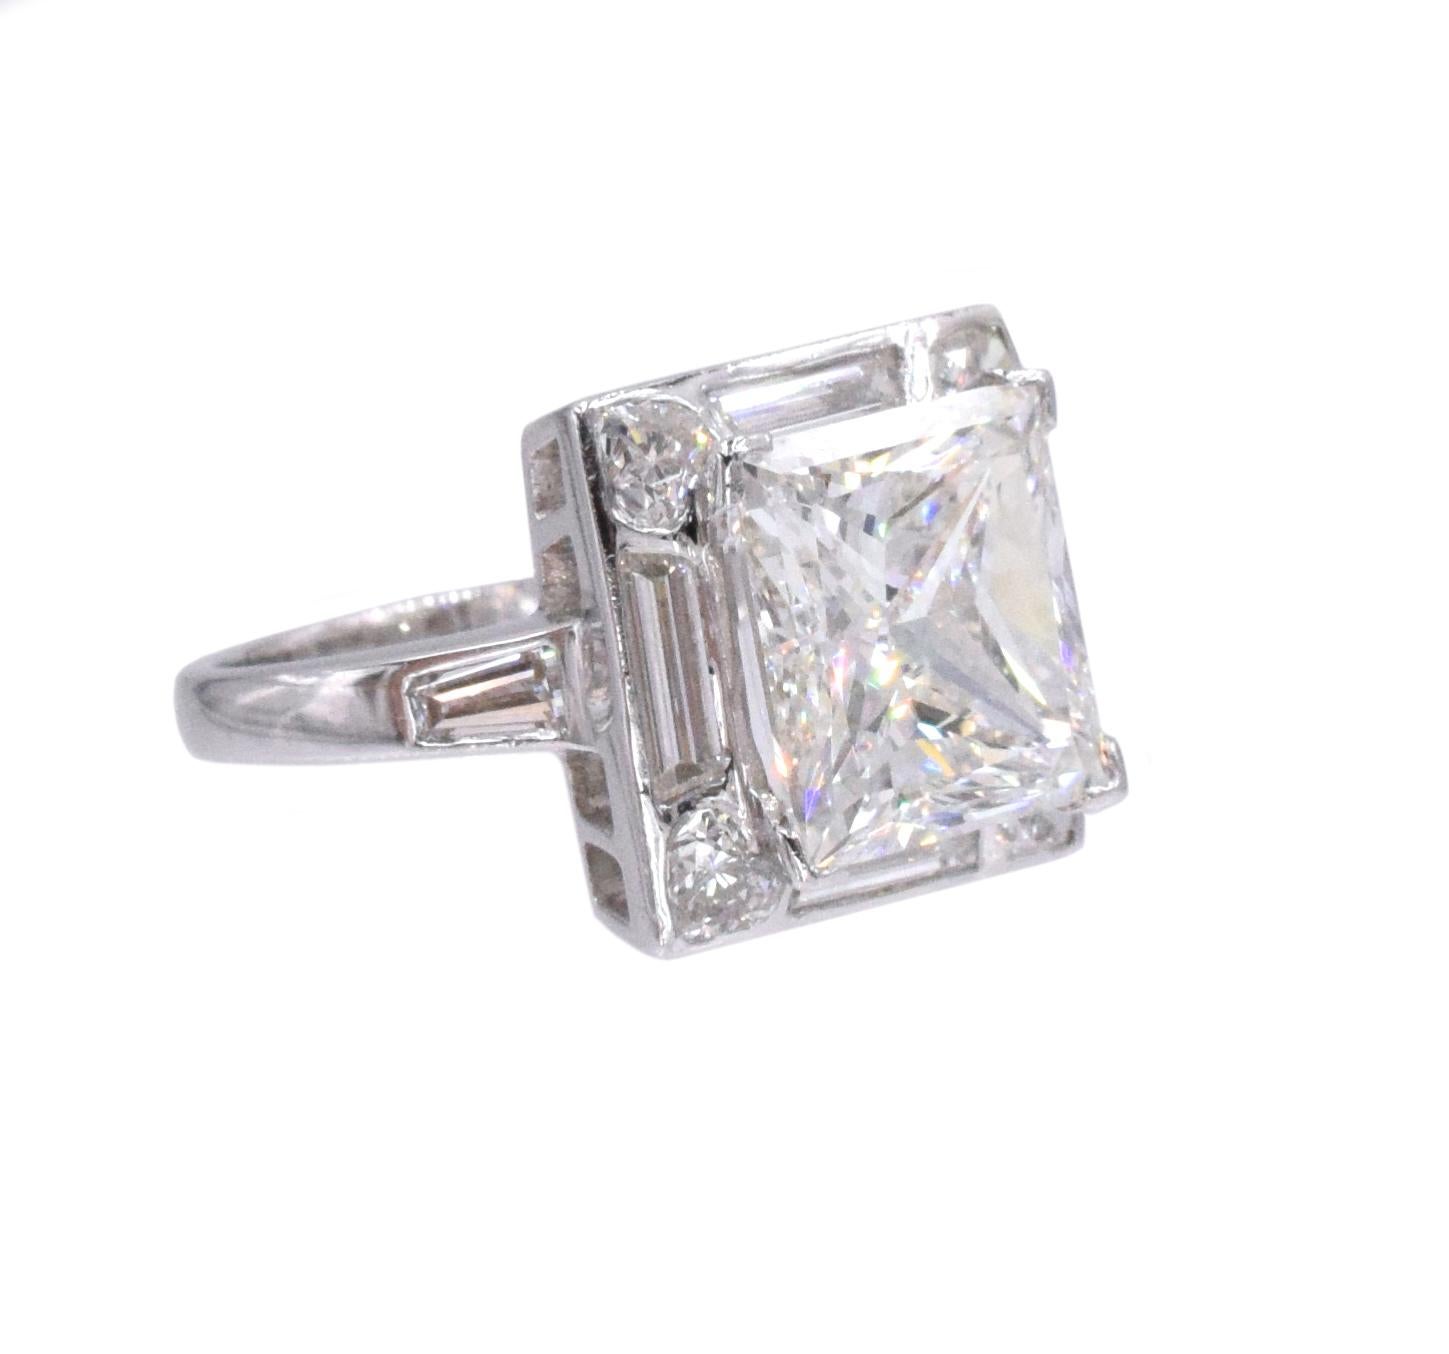 Bague de fiançailles en diamant en platine.
Le centre de la bague est serti d'un diamant taille princesse de 4,01ct, couleur G, pureté VS1, GIA#8440332. Placée dans une monture en platine sertie de quatre diamants de taille trapézoïdale pesant au